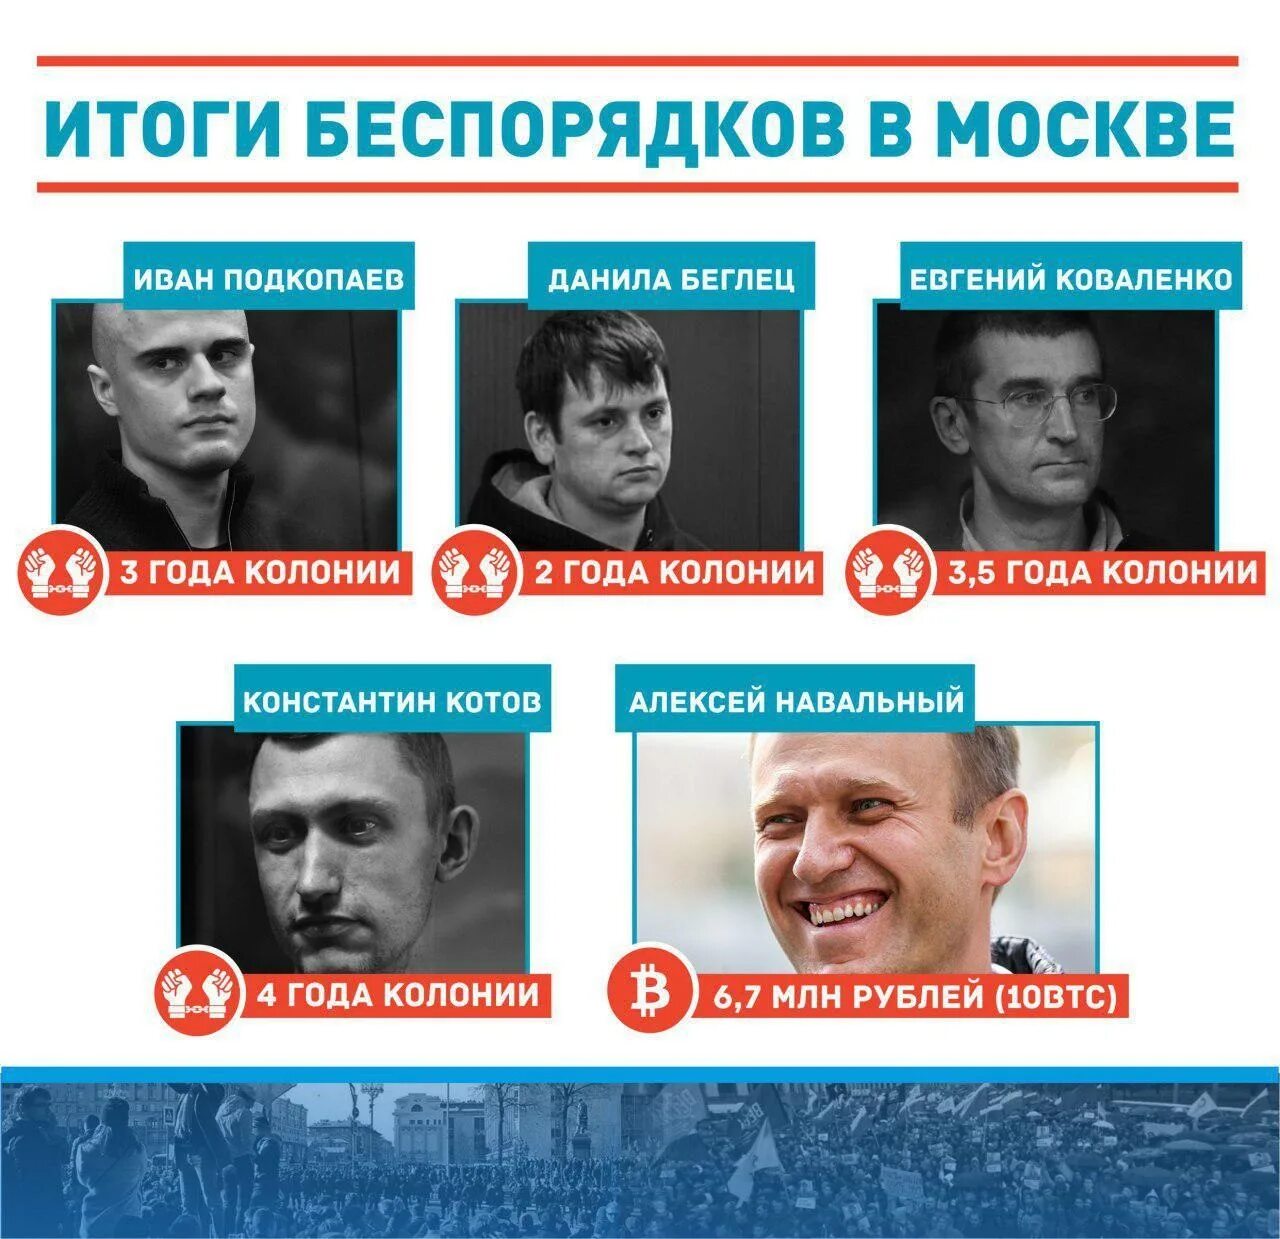 Откуда появился навальный. Высказывание Навального.